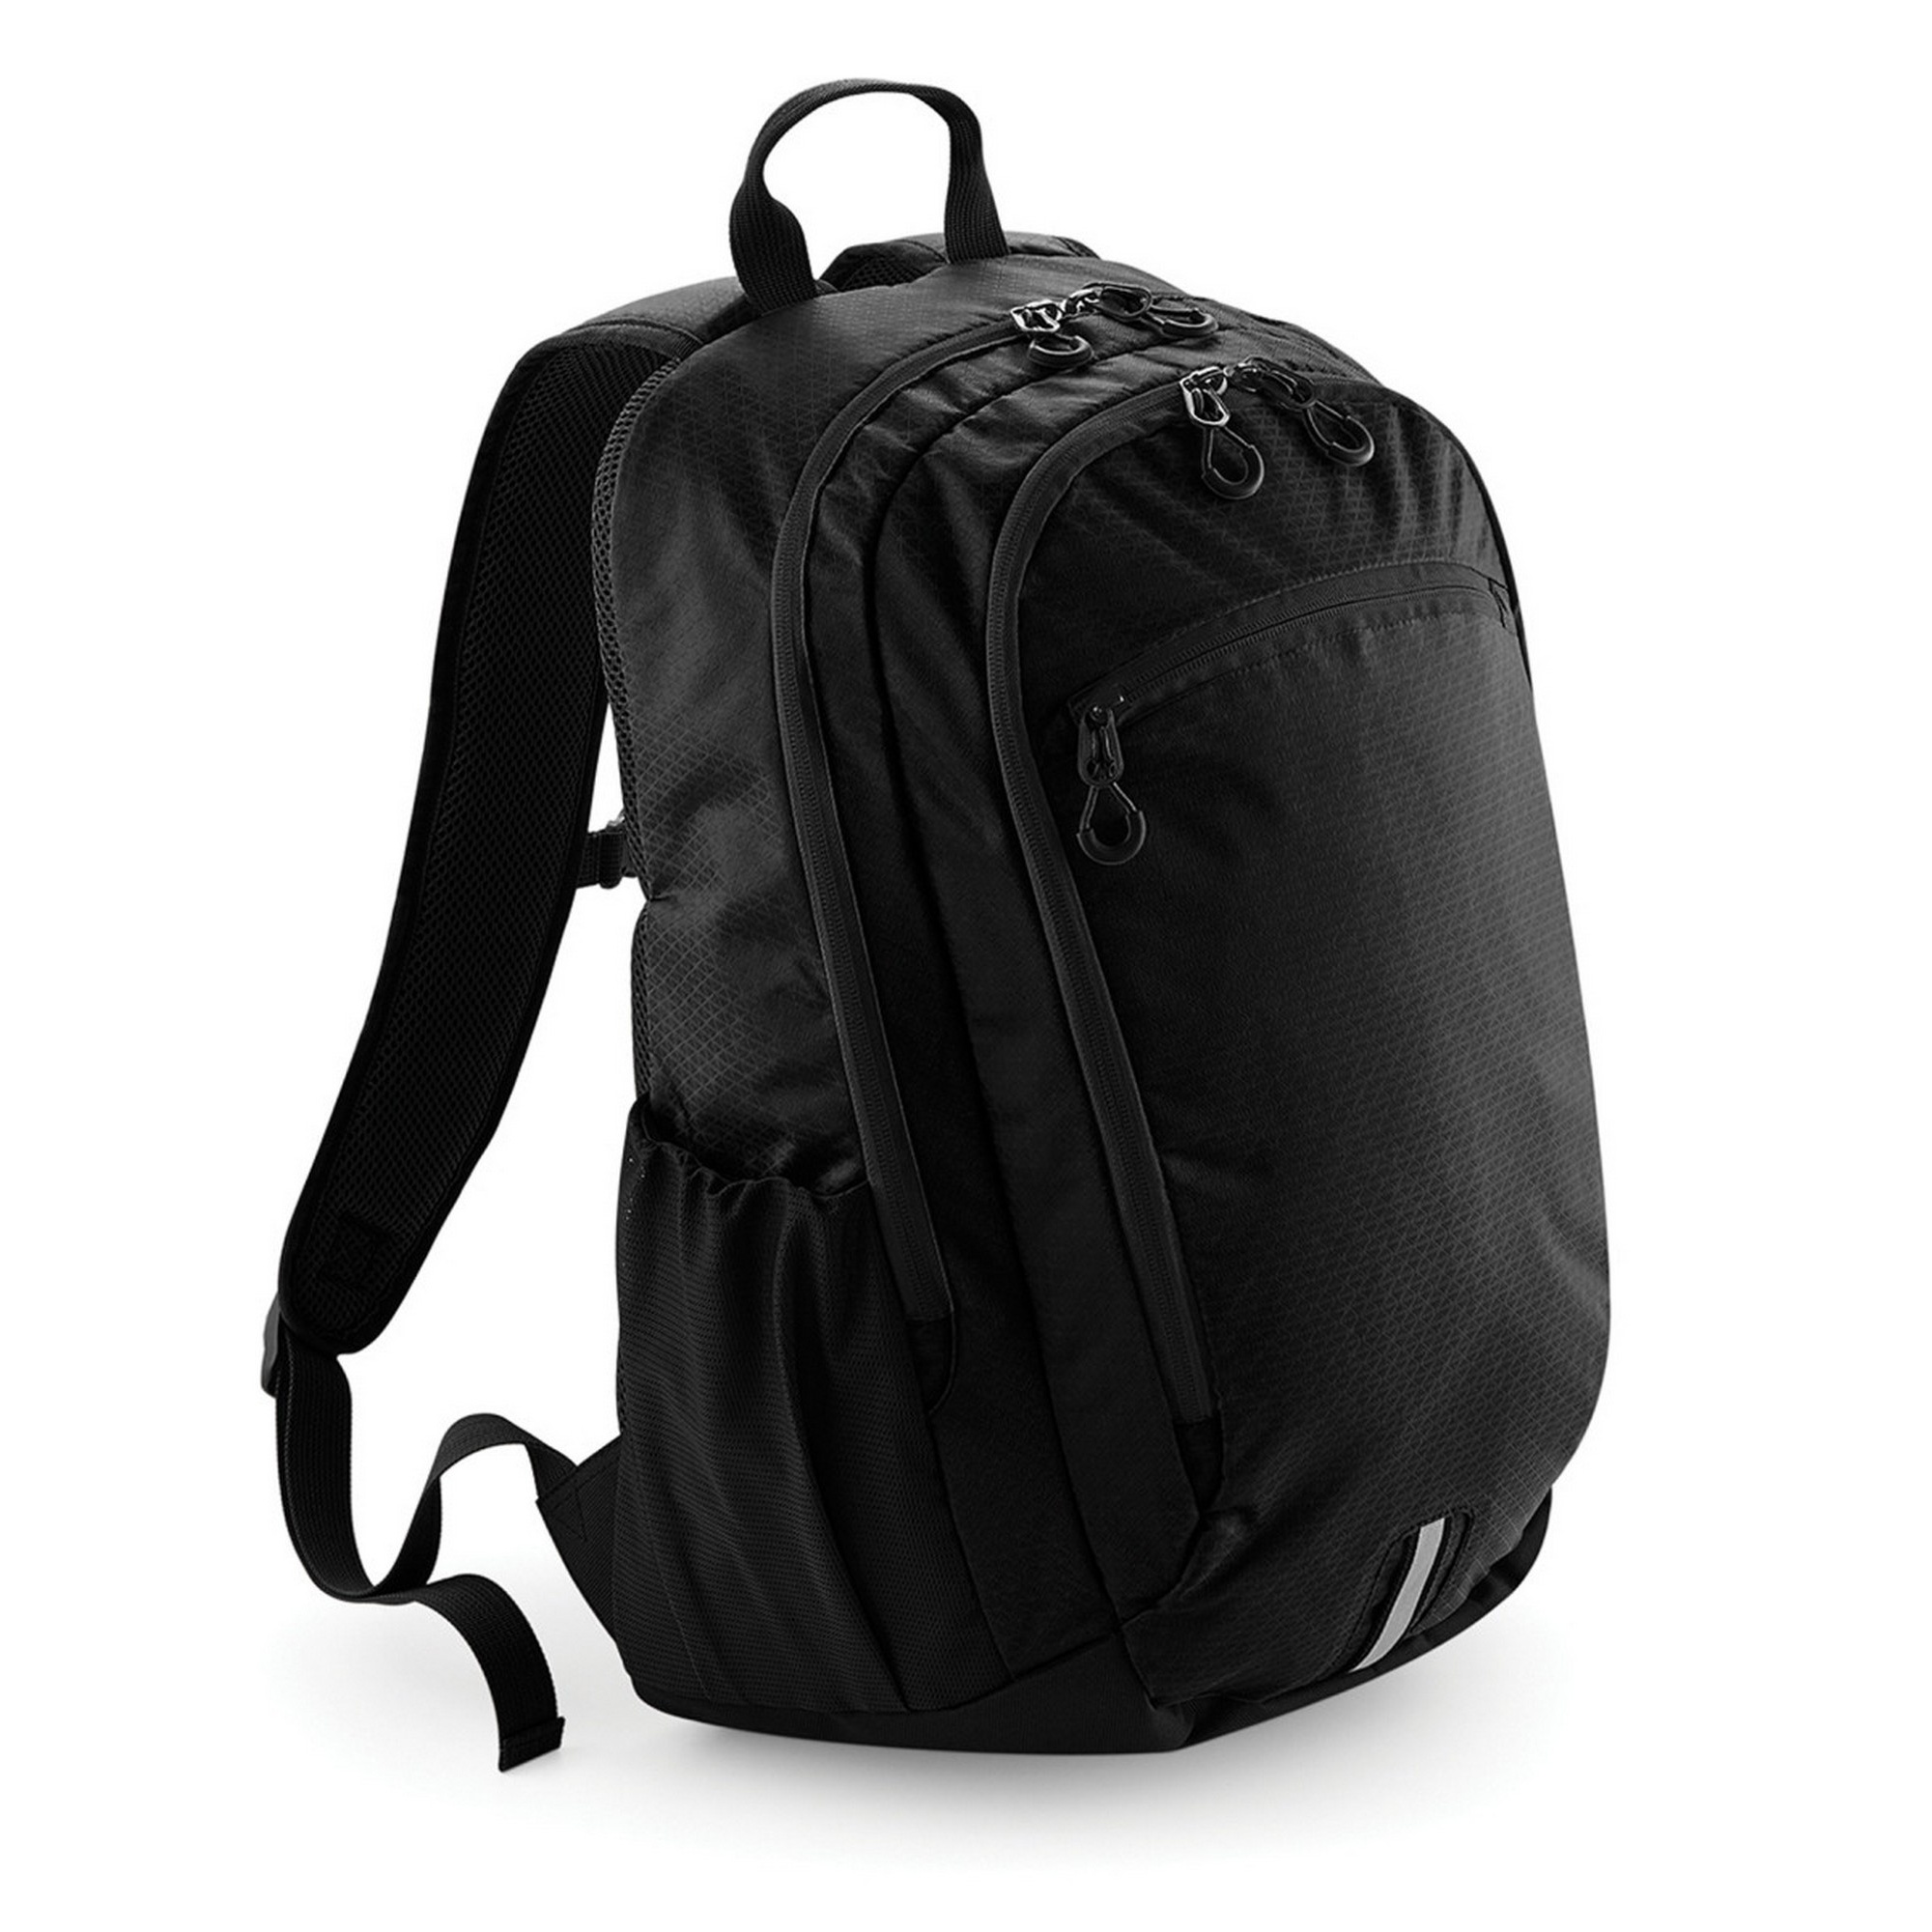 Endeavour Backpack/saco De Mochila Quadra - negro - 